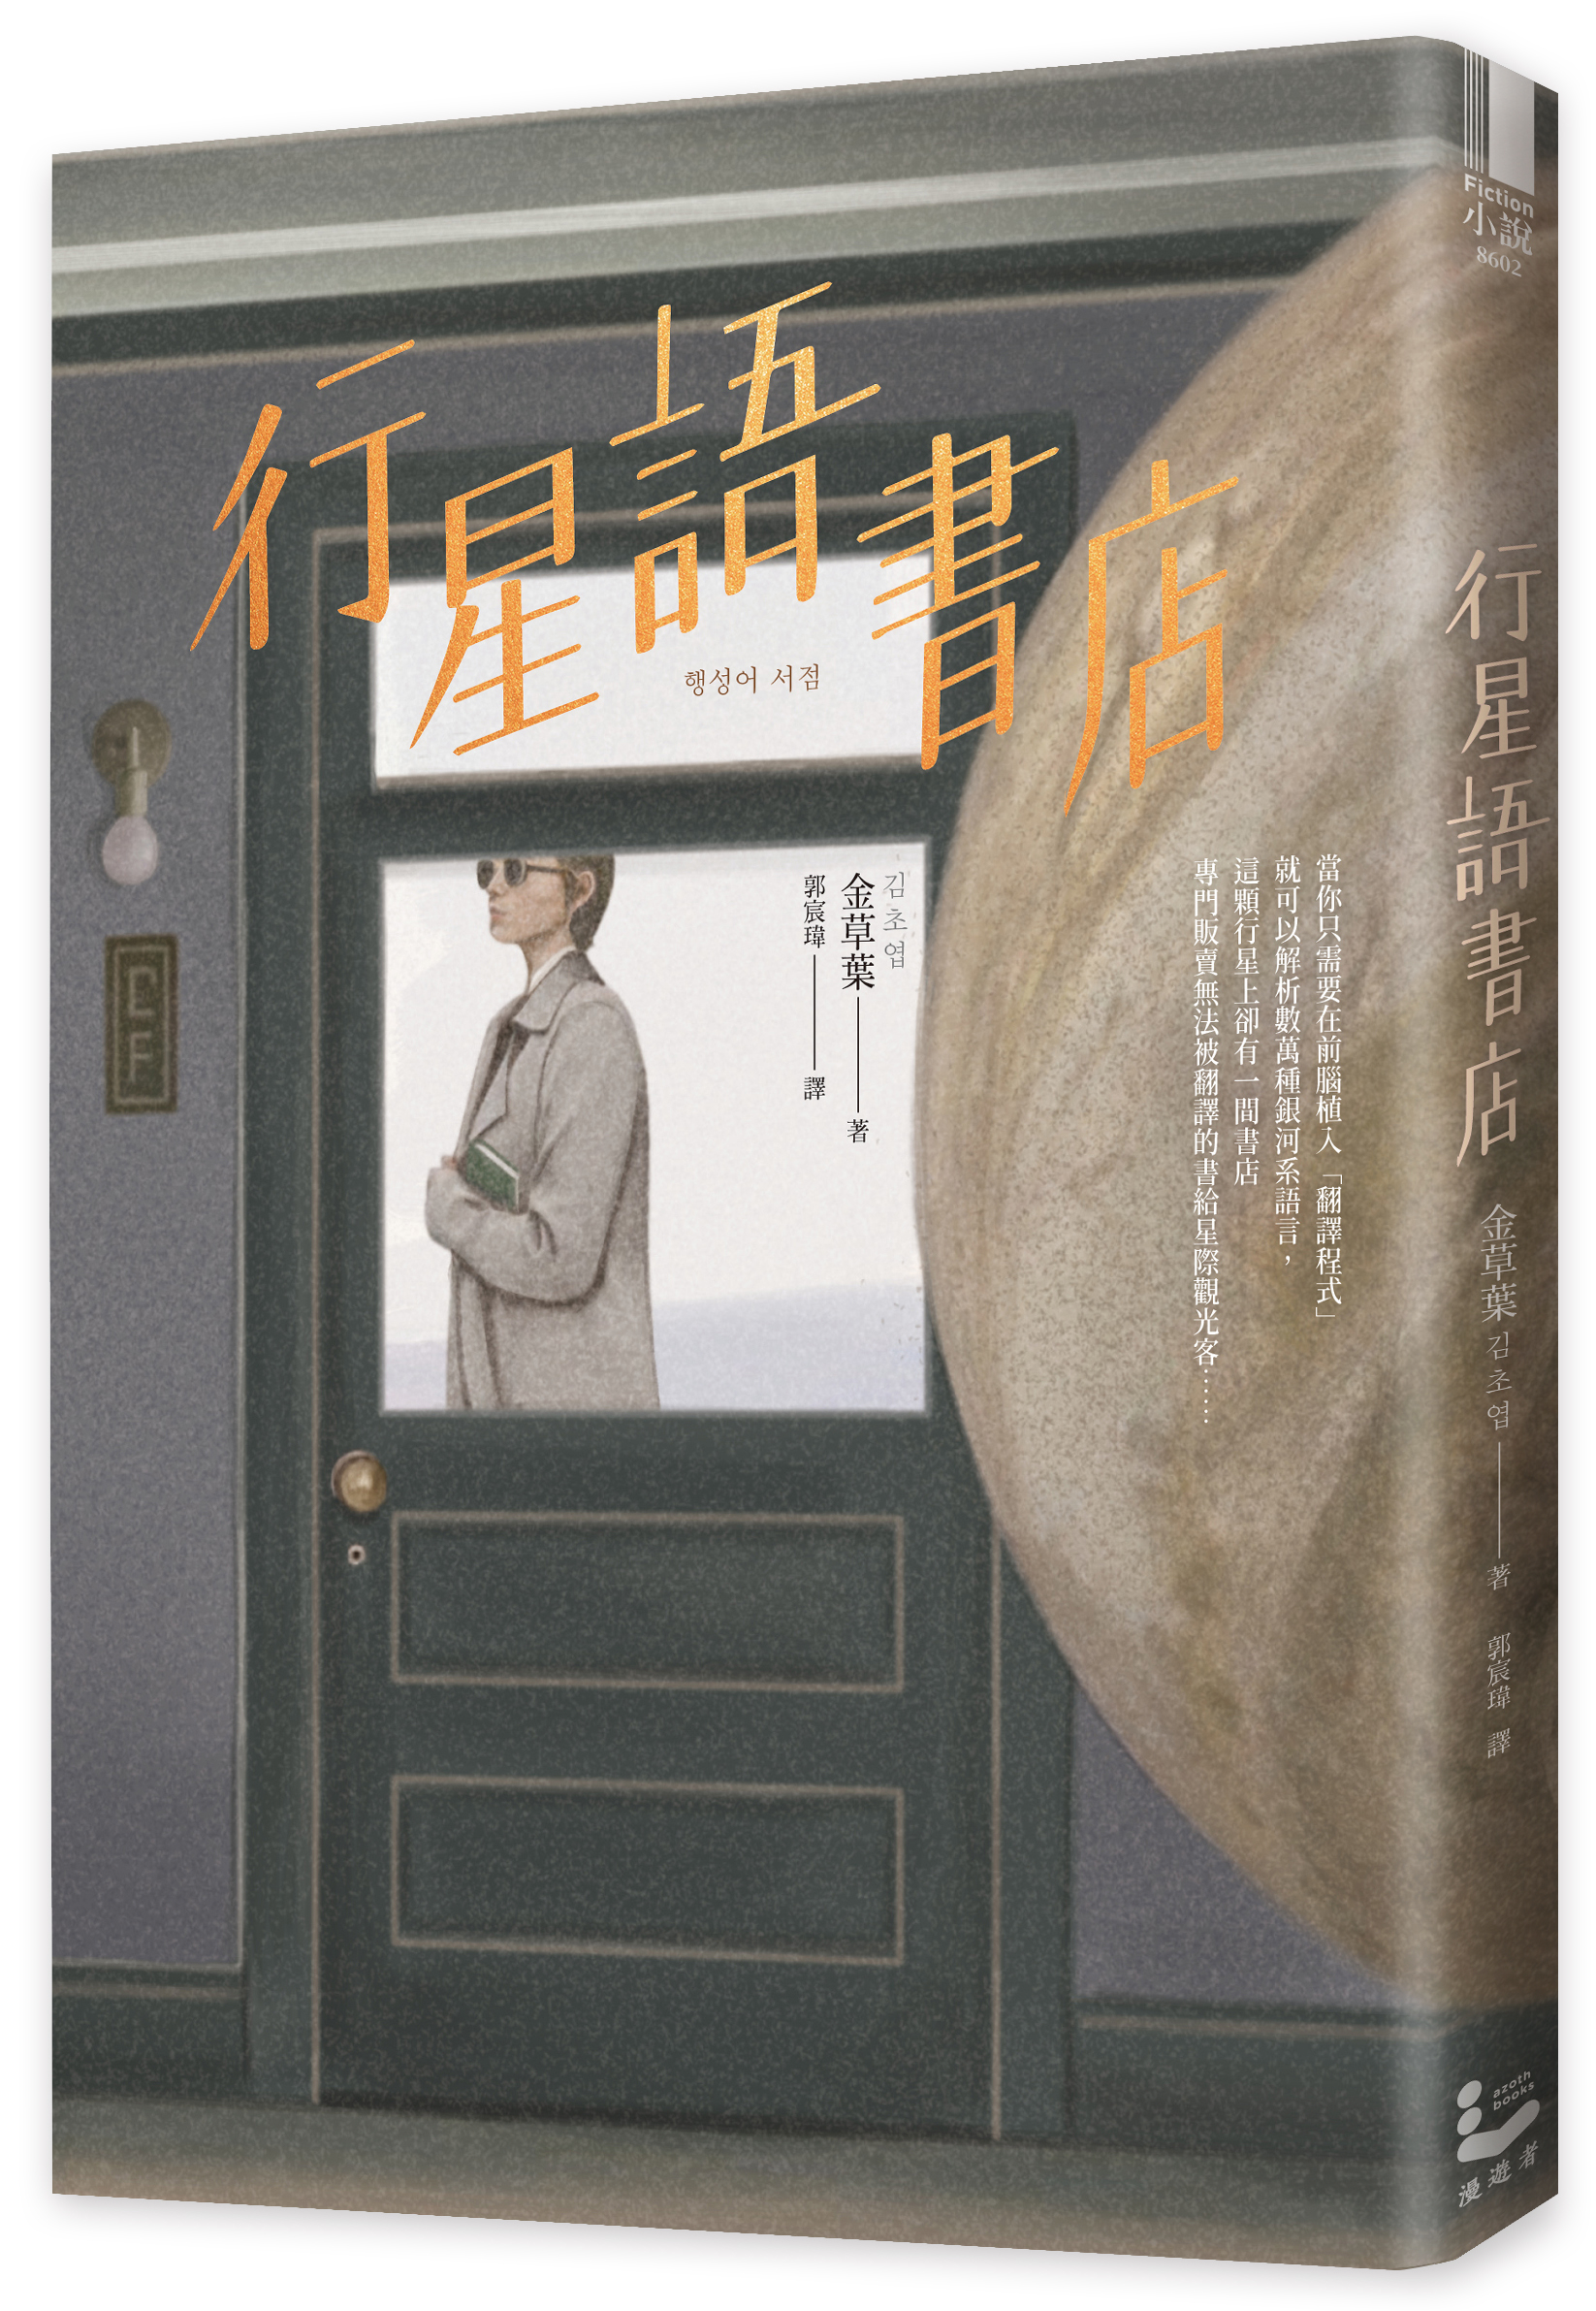 金草葉以暖科幻風格，打入韓國主流閱讀市場，四本出版小說橫掃韓國書店暢銷榜，作品更被譽為新世代科幻小說趨勢。圖由聯經出版提供